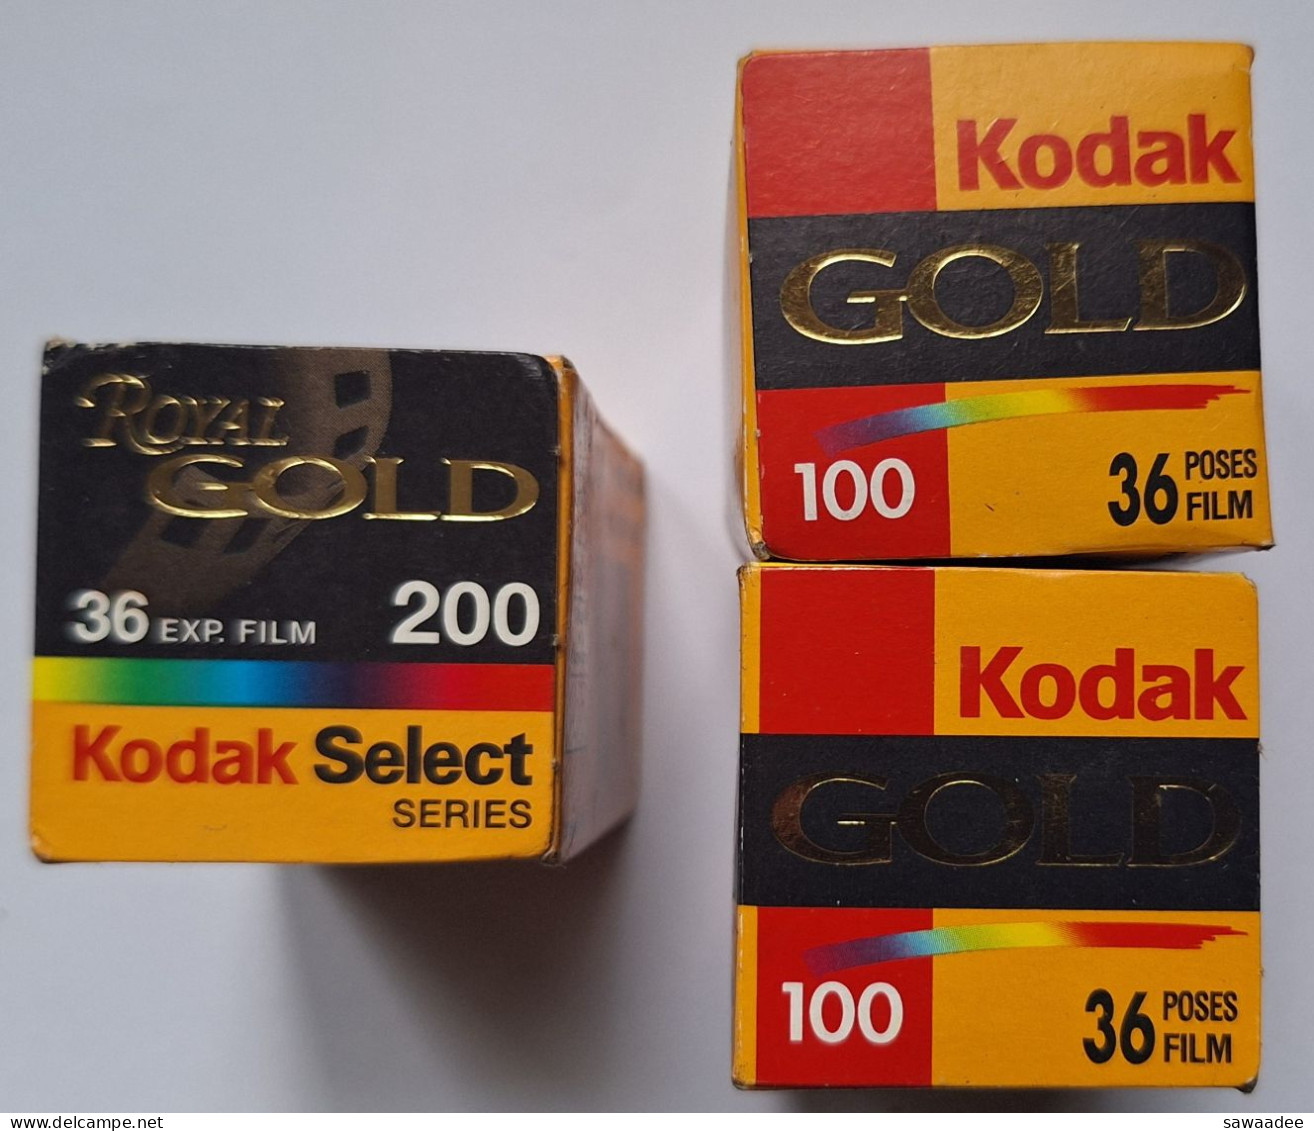 PHOTOGRAPHIE - LOT DE 3 BOITES DE PELLICULE KODAK - 1 ROYAL GOLD 200/36 - 2 GOLD 100/36 - ANNEE 2000 - VIERGES - Filme: 35mm - 16mm - 9,5+8+S8mm